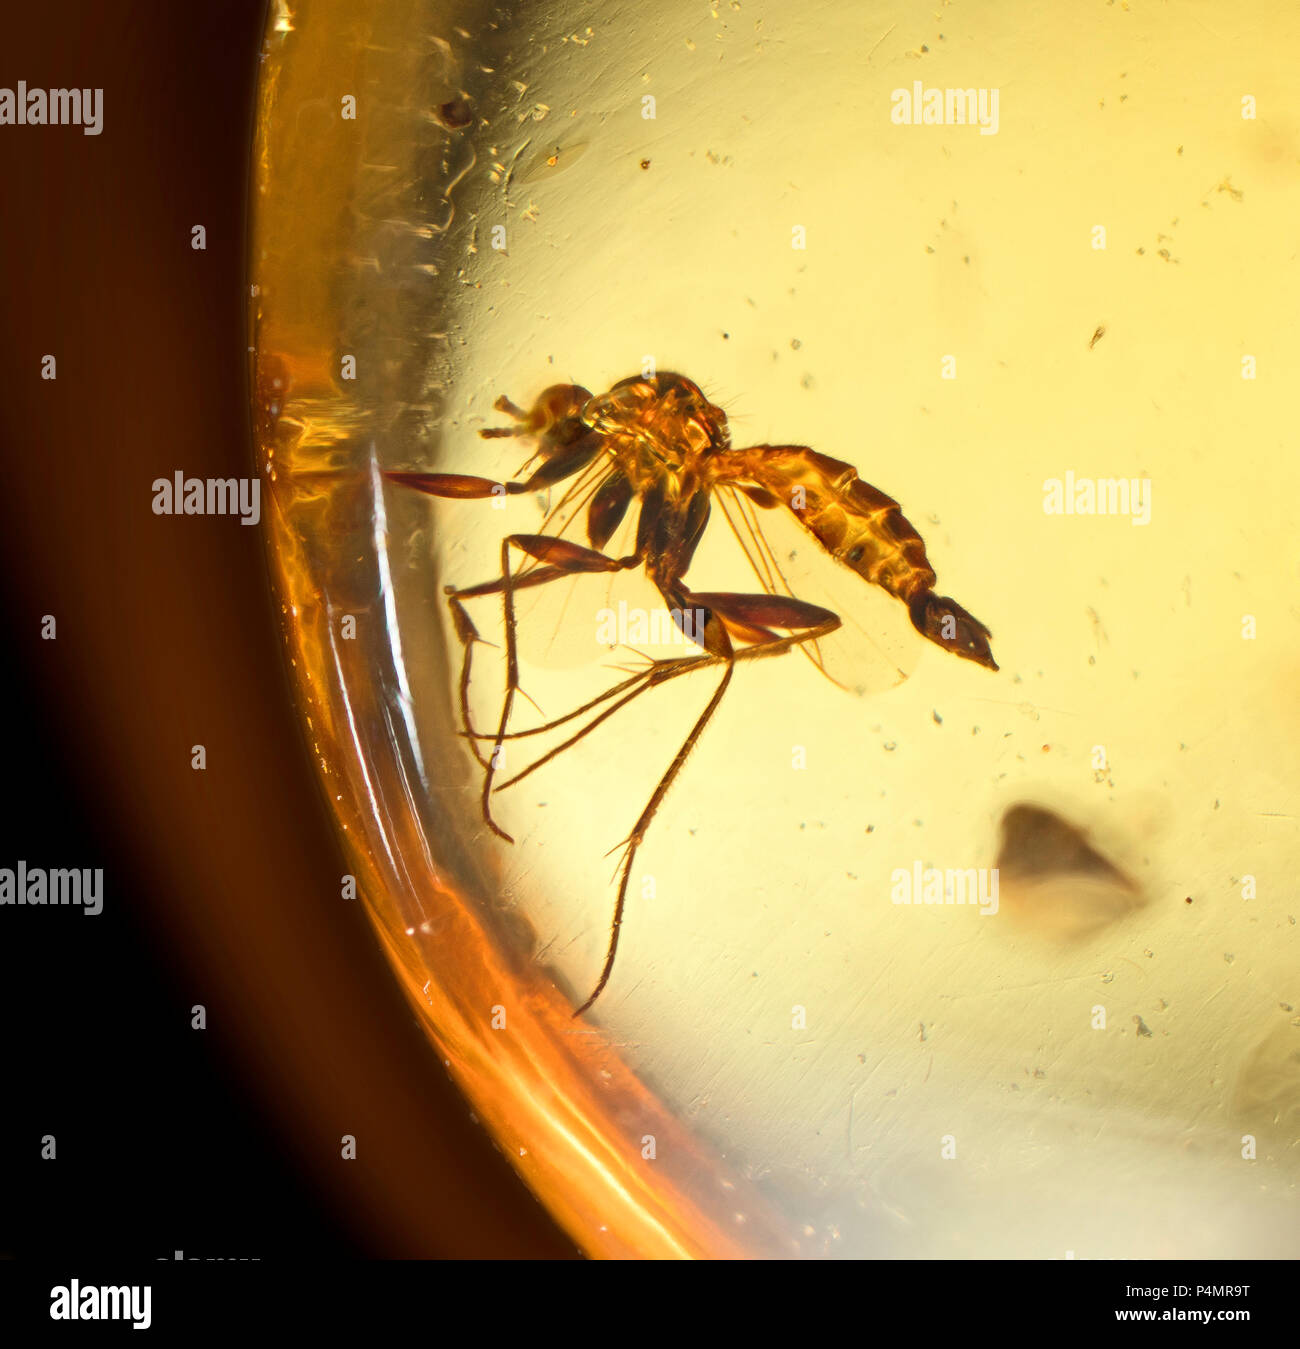 Intrappolato volare insetti in ambra birmana Foto Stock